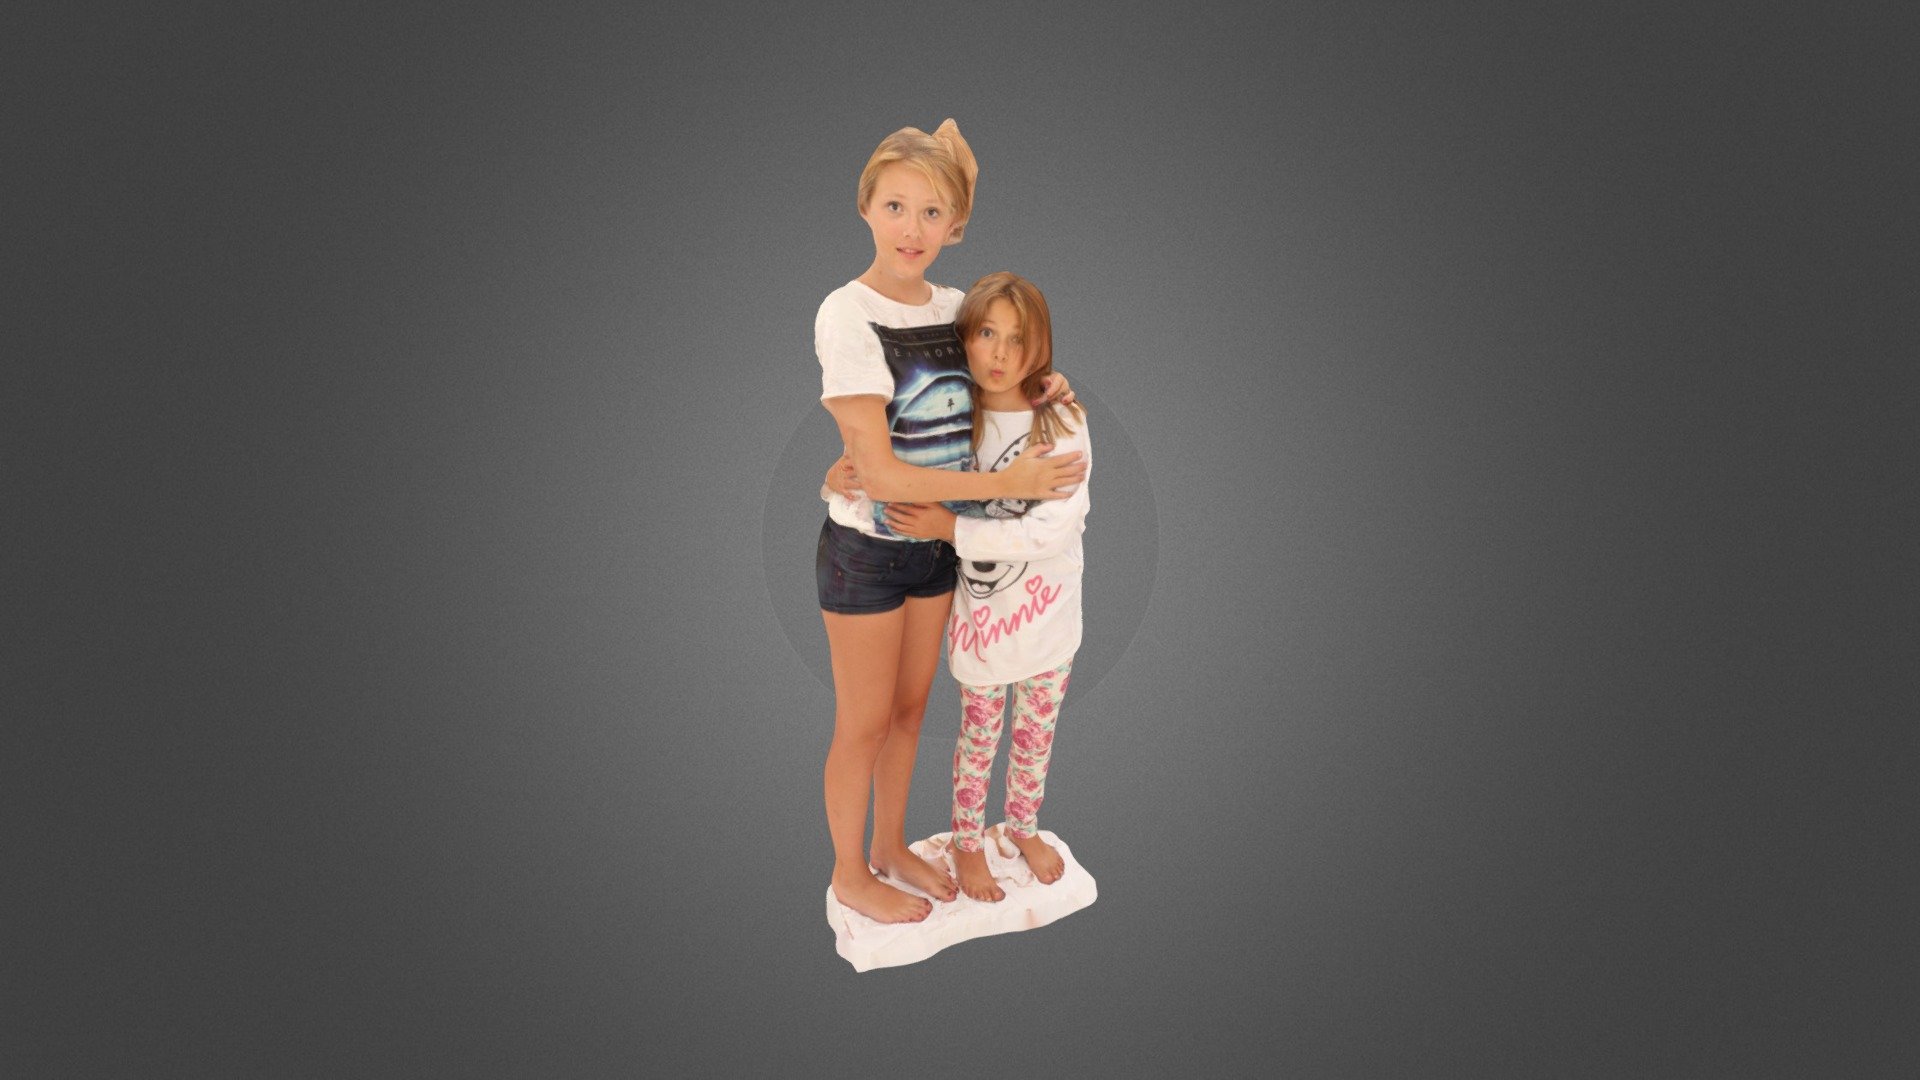 The kids - 3D model by fabberlounge 3d model